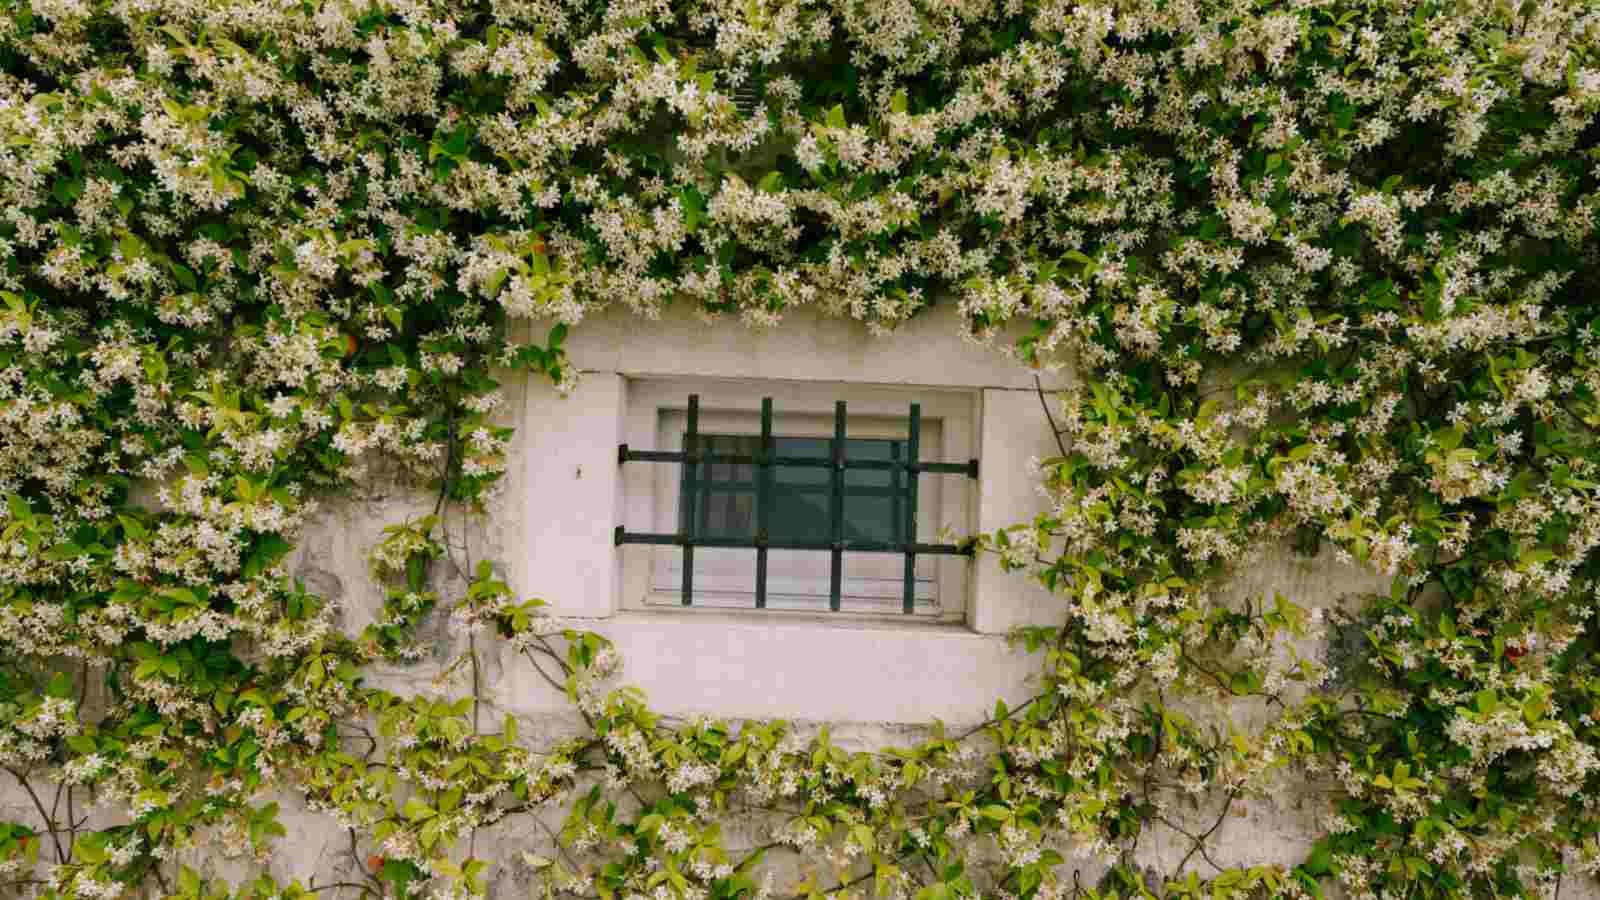 Cây cảnh lá xanh như ngọc, hoa trắng như tuyết, biến nhà bạn thành ốc đảo lấp lánh, thơm ngát- Ảnh 11.